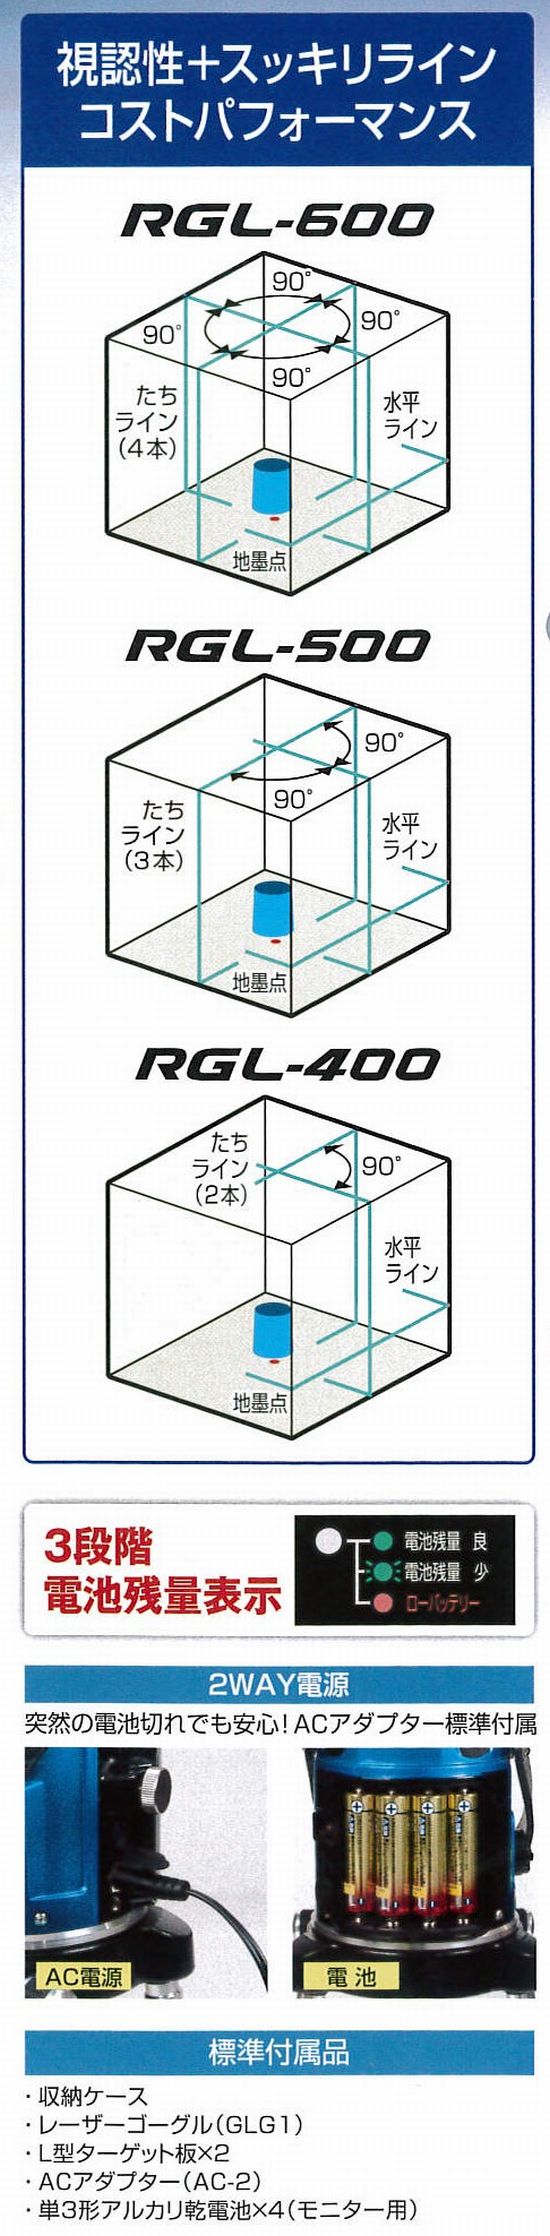 ムラテックKDS リアルグリーンレーザー RGL-600 本体のみ